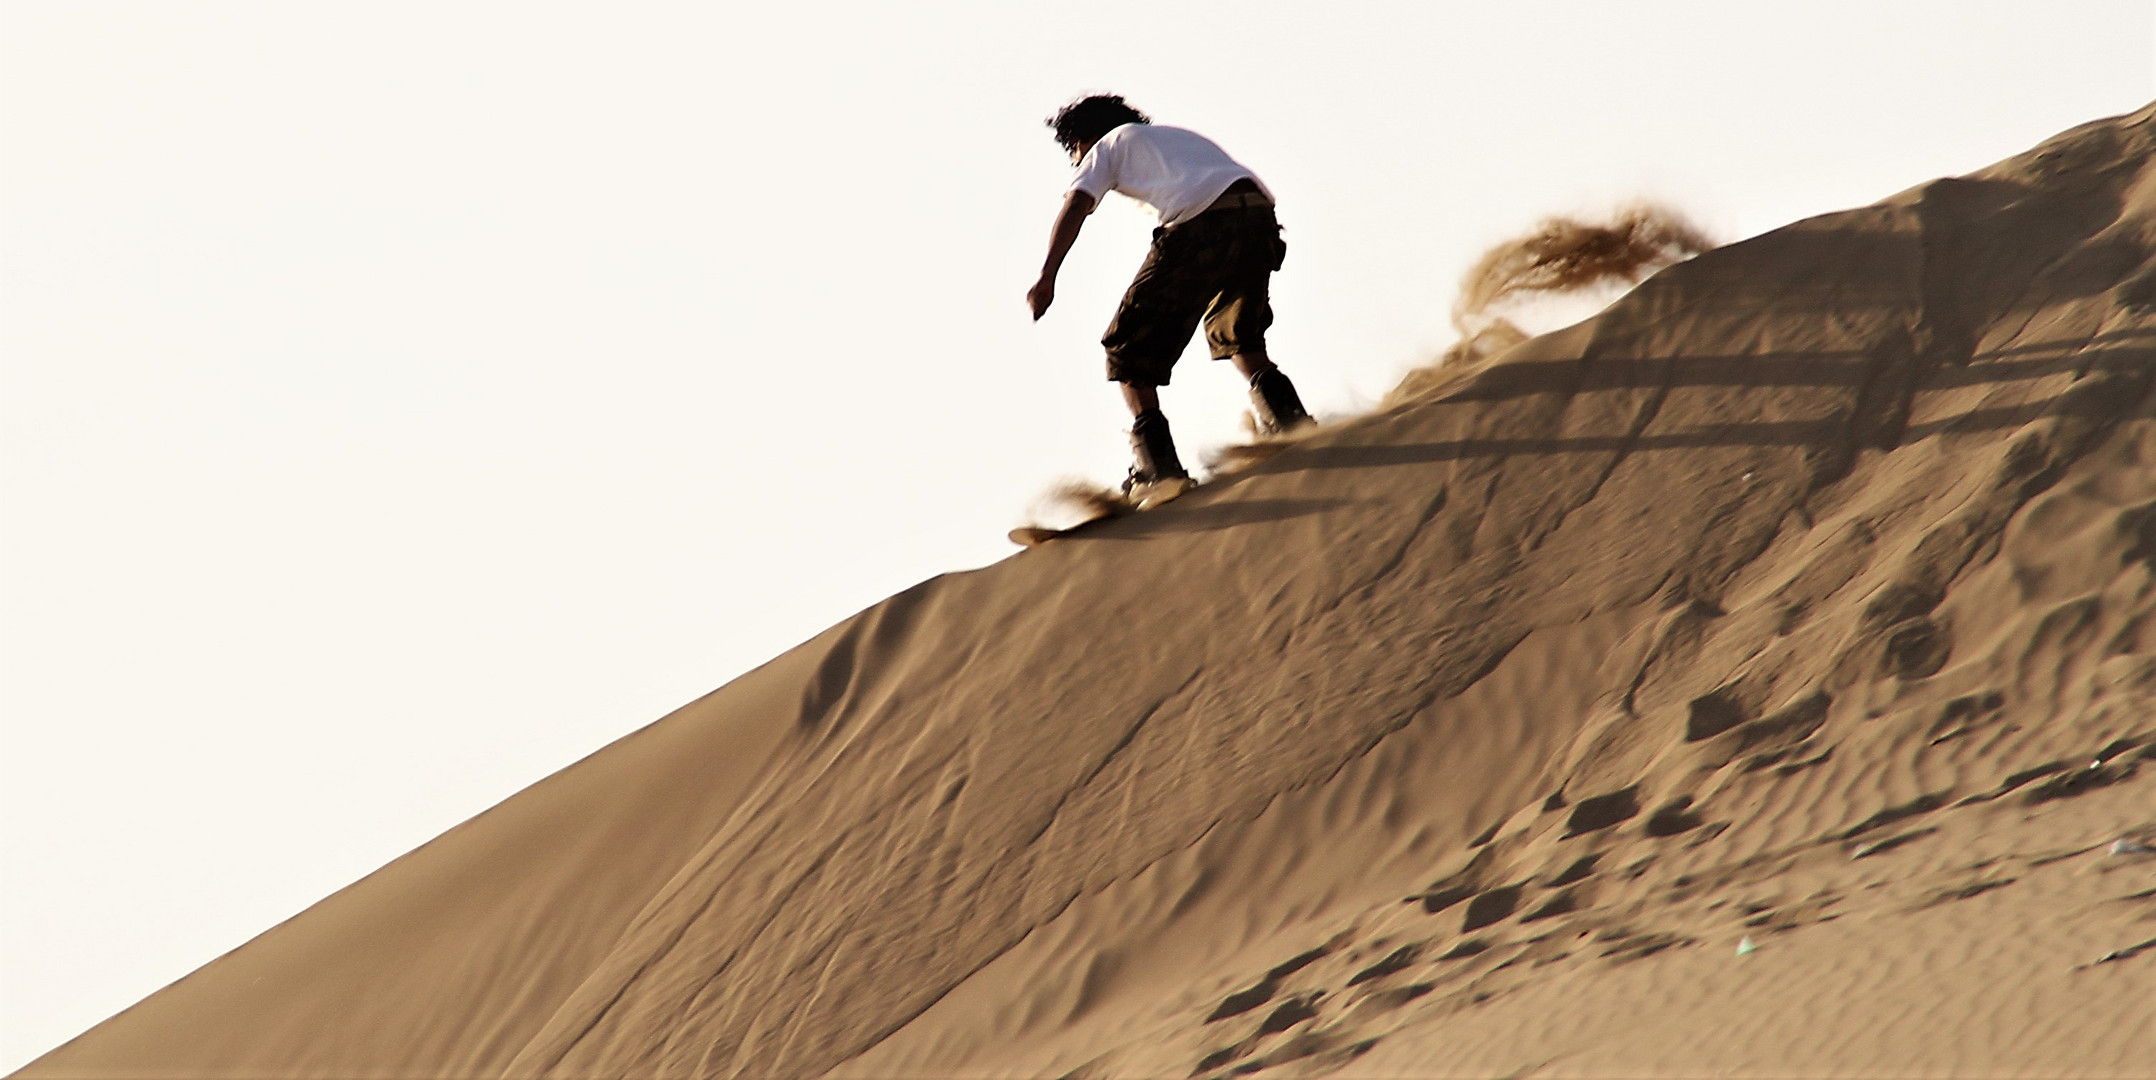 PP surfer sand_Peru_8992_color